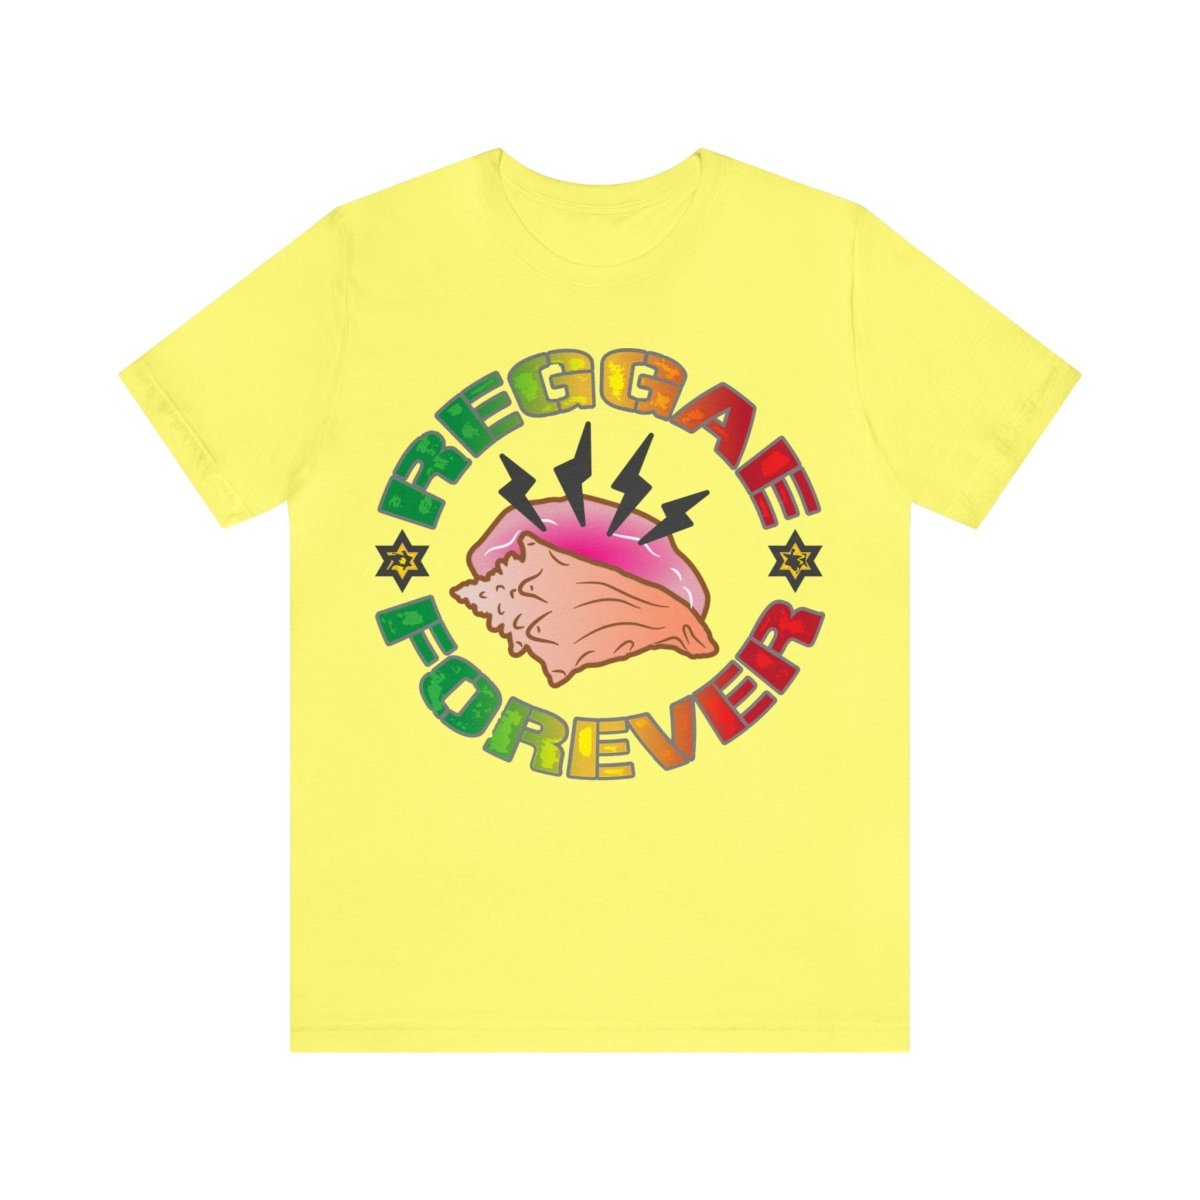 Reggae Forever Premium T-Shirt, Seashell, Ocean Sounds, Caribbean, Relax, Good Vibes